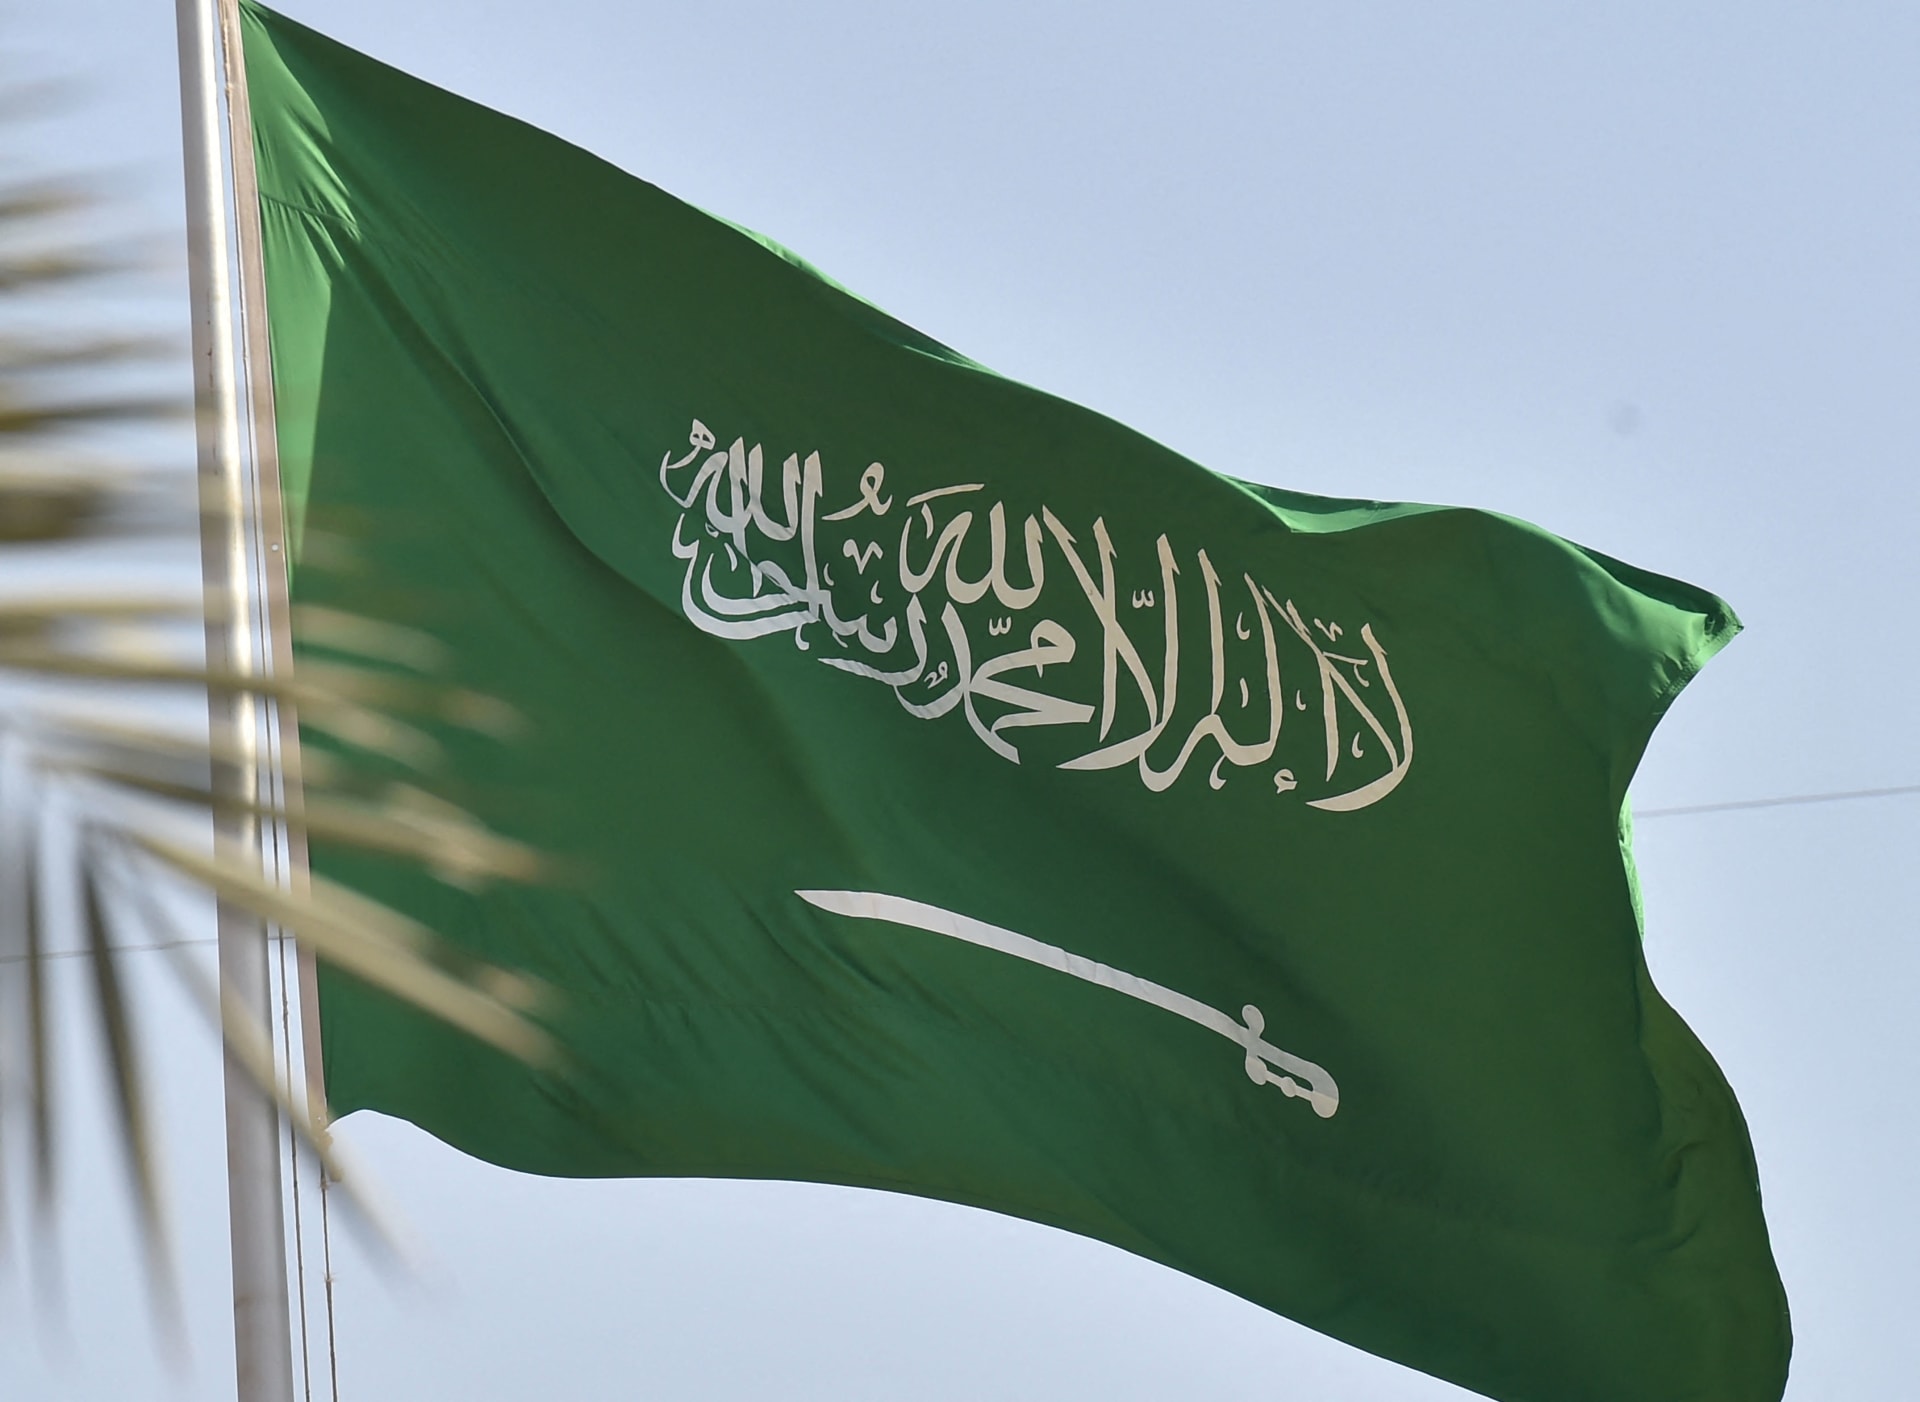 السعودية تعلن بدأ الاستغناء عن الوافدين العاملين في هذه المهن خلال اسابيع وهذا مصيرهم